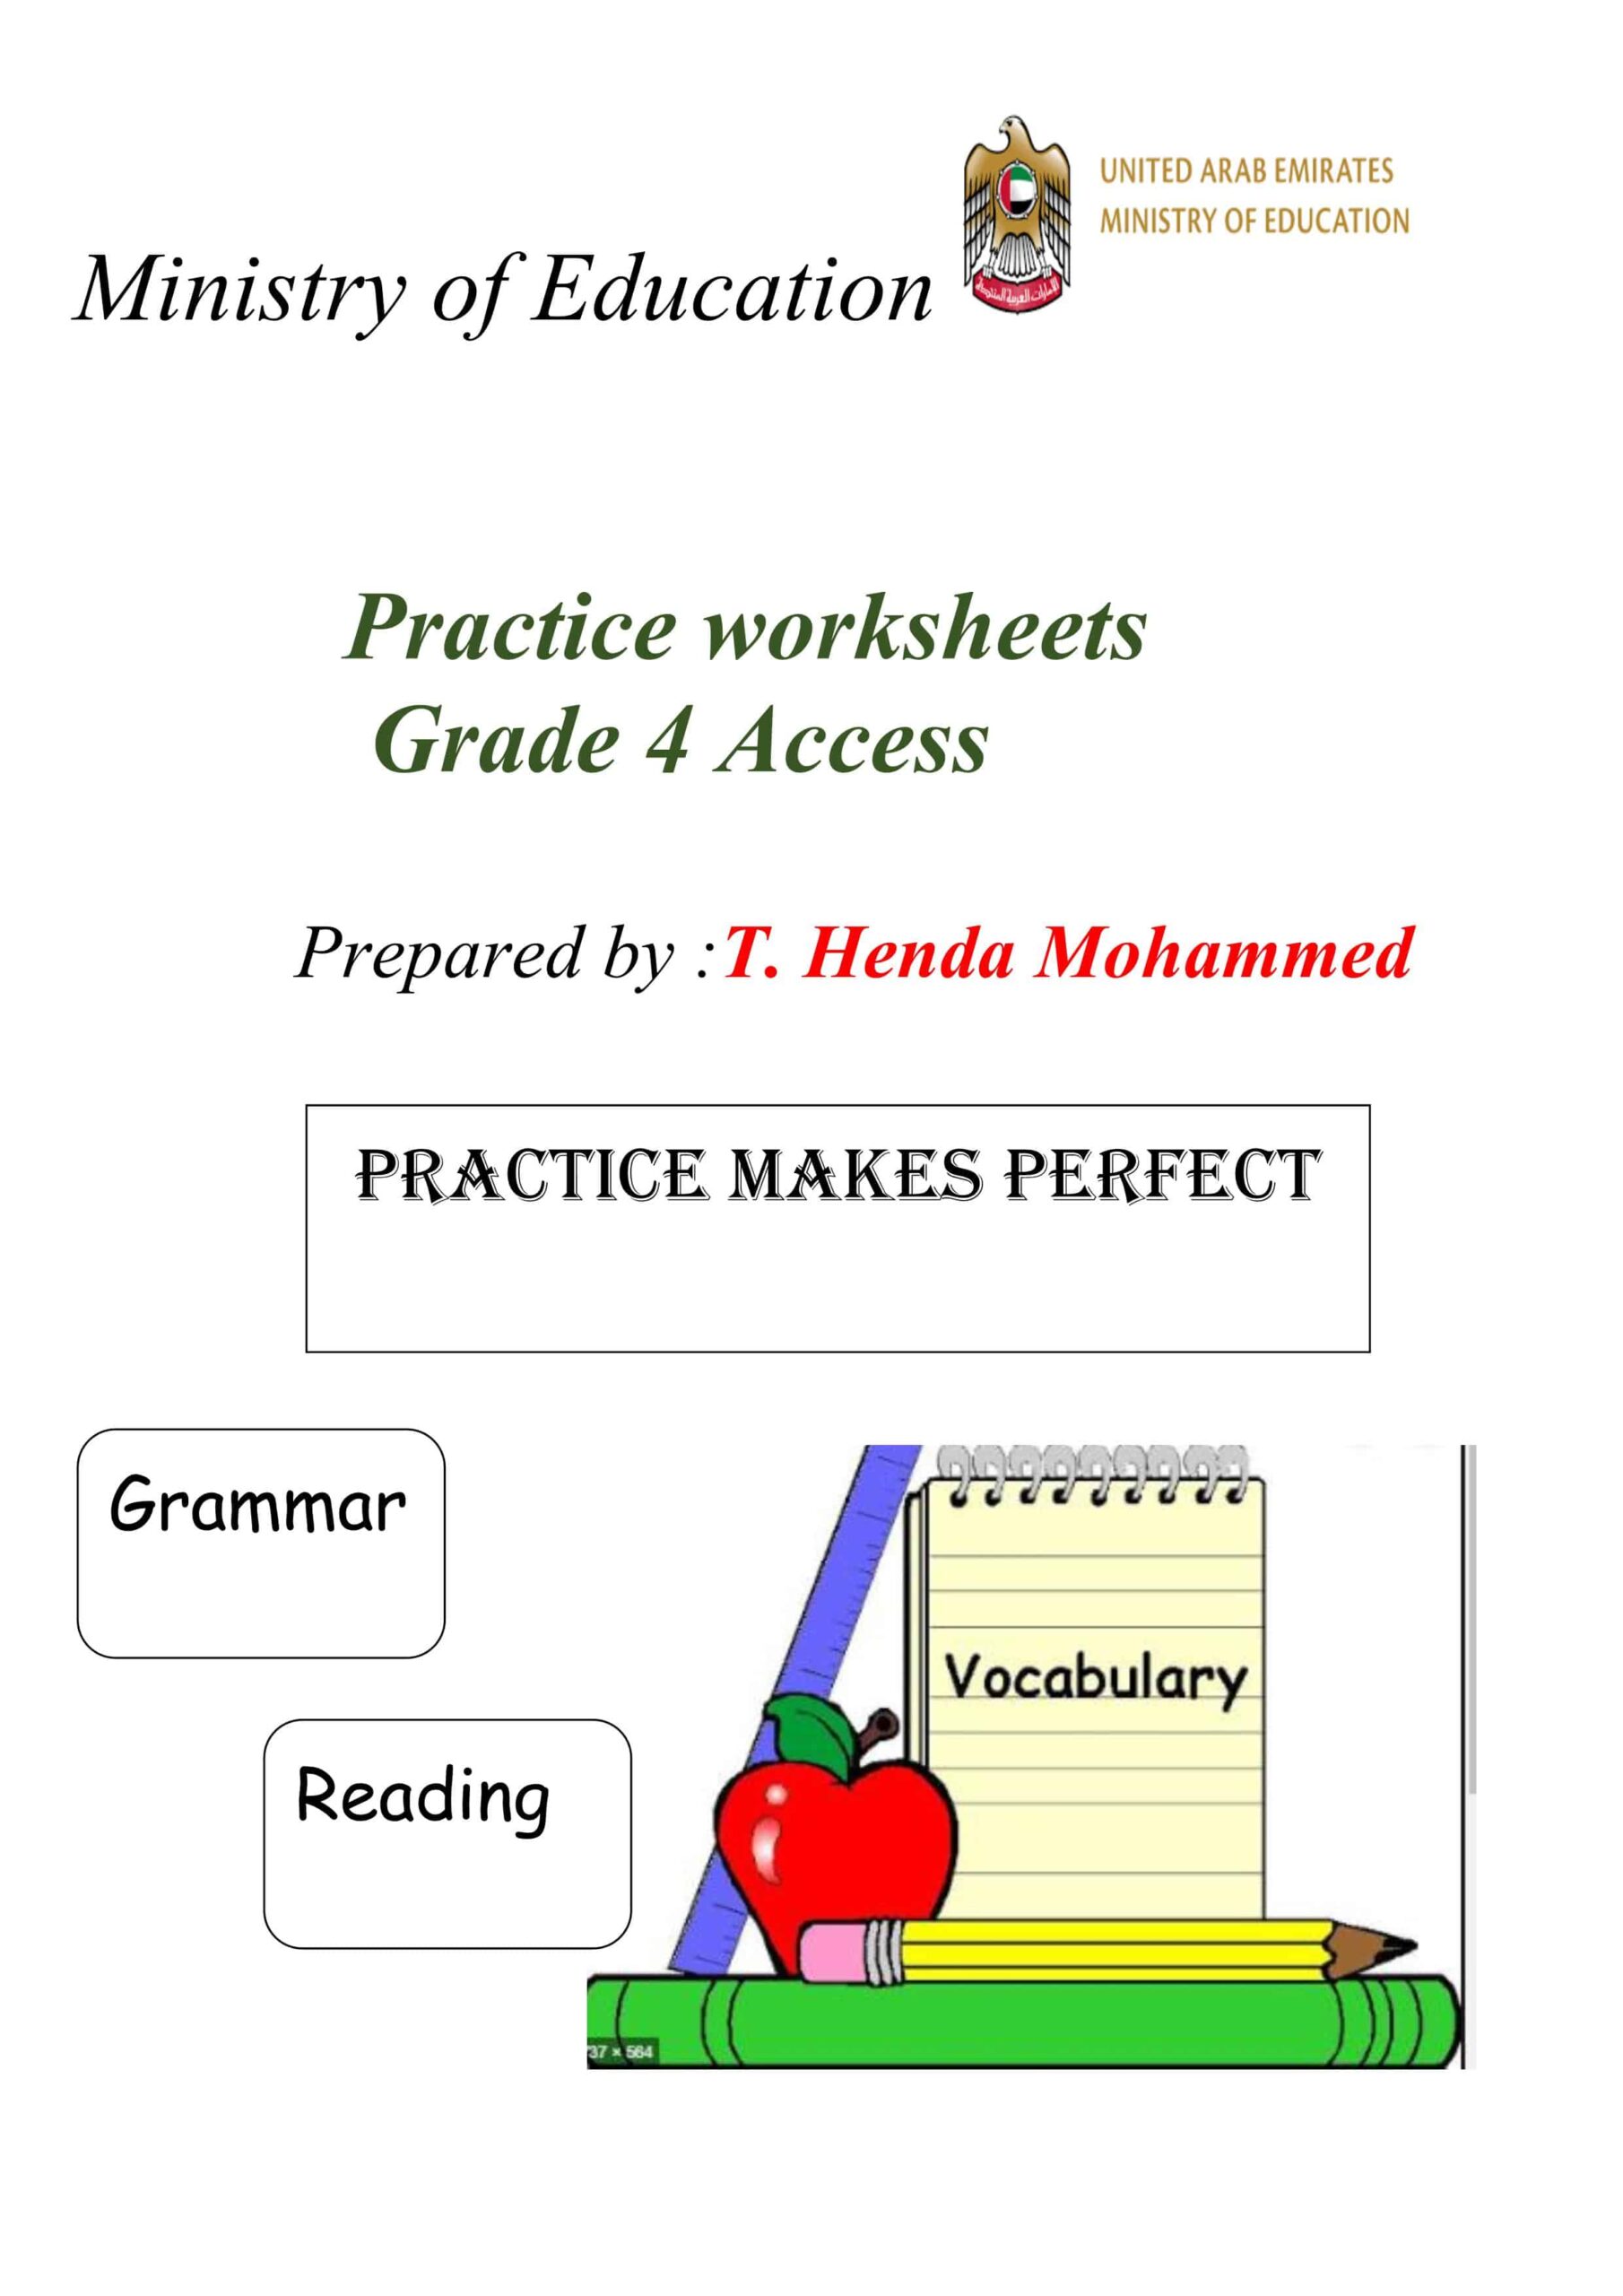 Practice worksheets اللغة الإنجليزية الصف الرابع Access